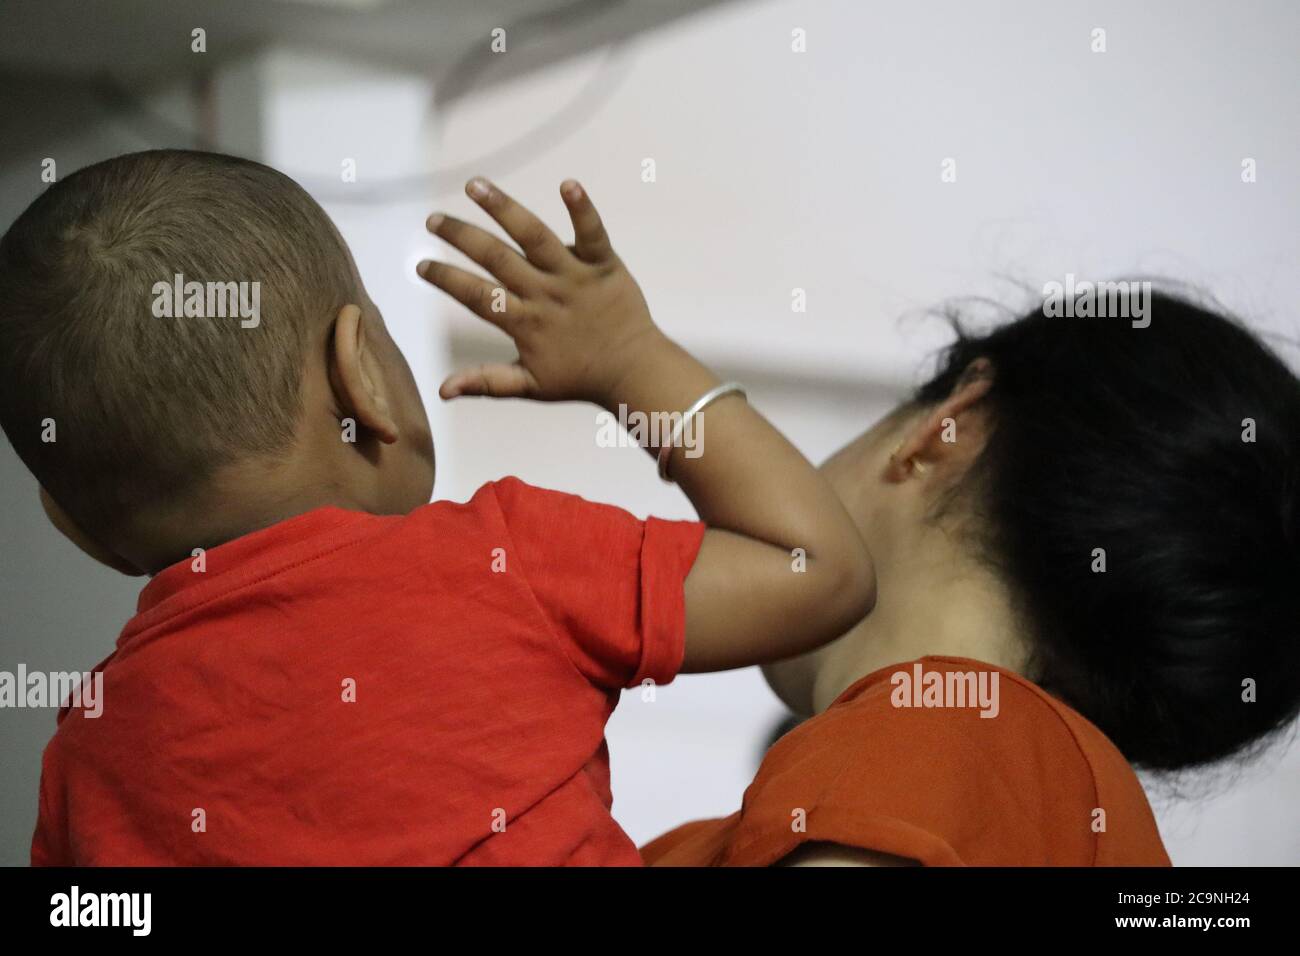 Irritated Baby slapping mummy during Corona Lockdown Stock Photo